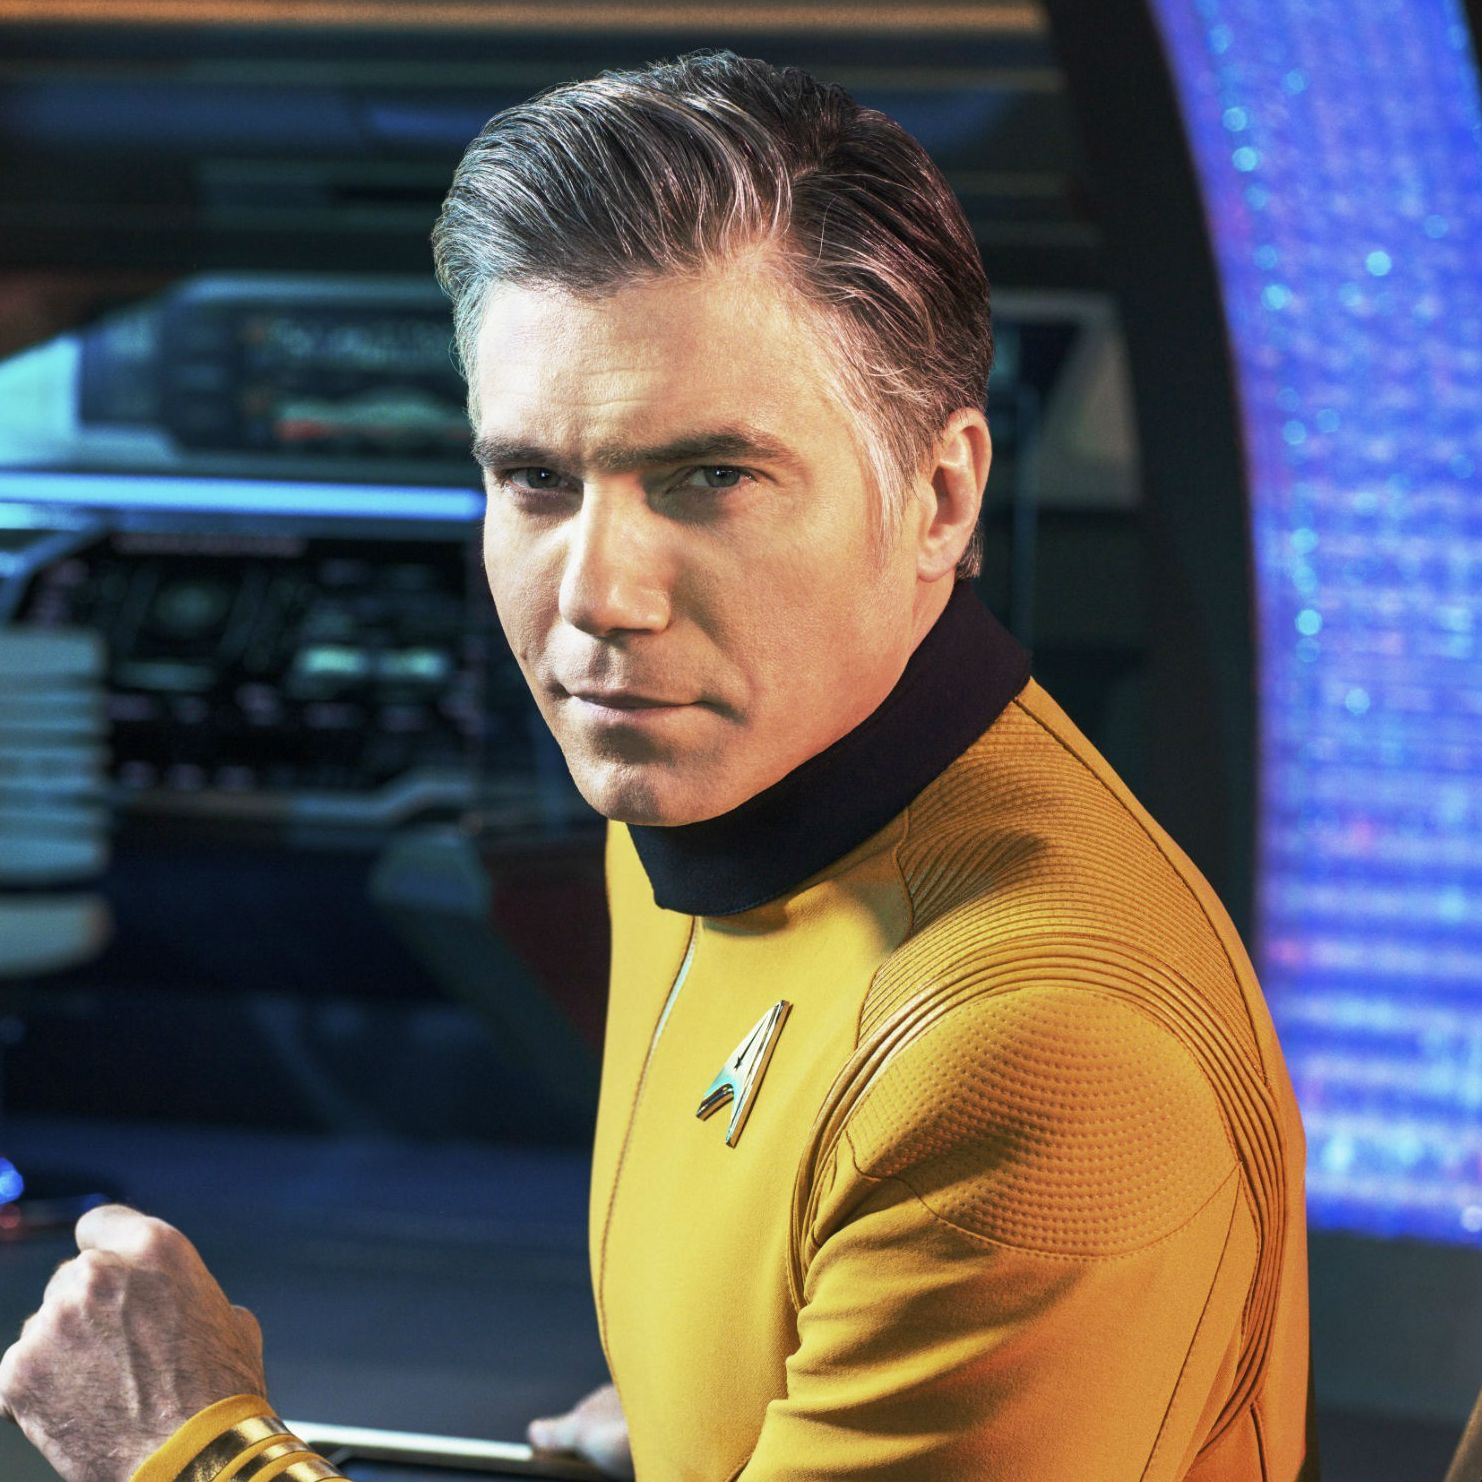 Watch Captain Pike return in new Star Trek: Short Treks trailer